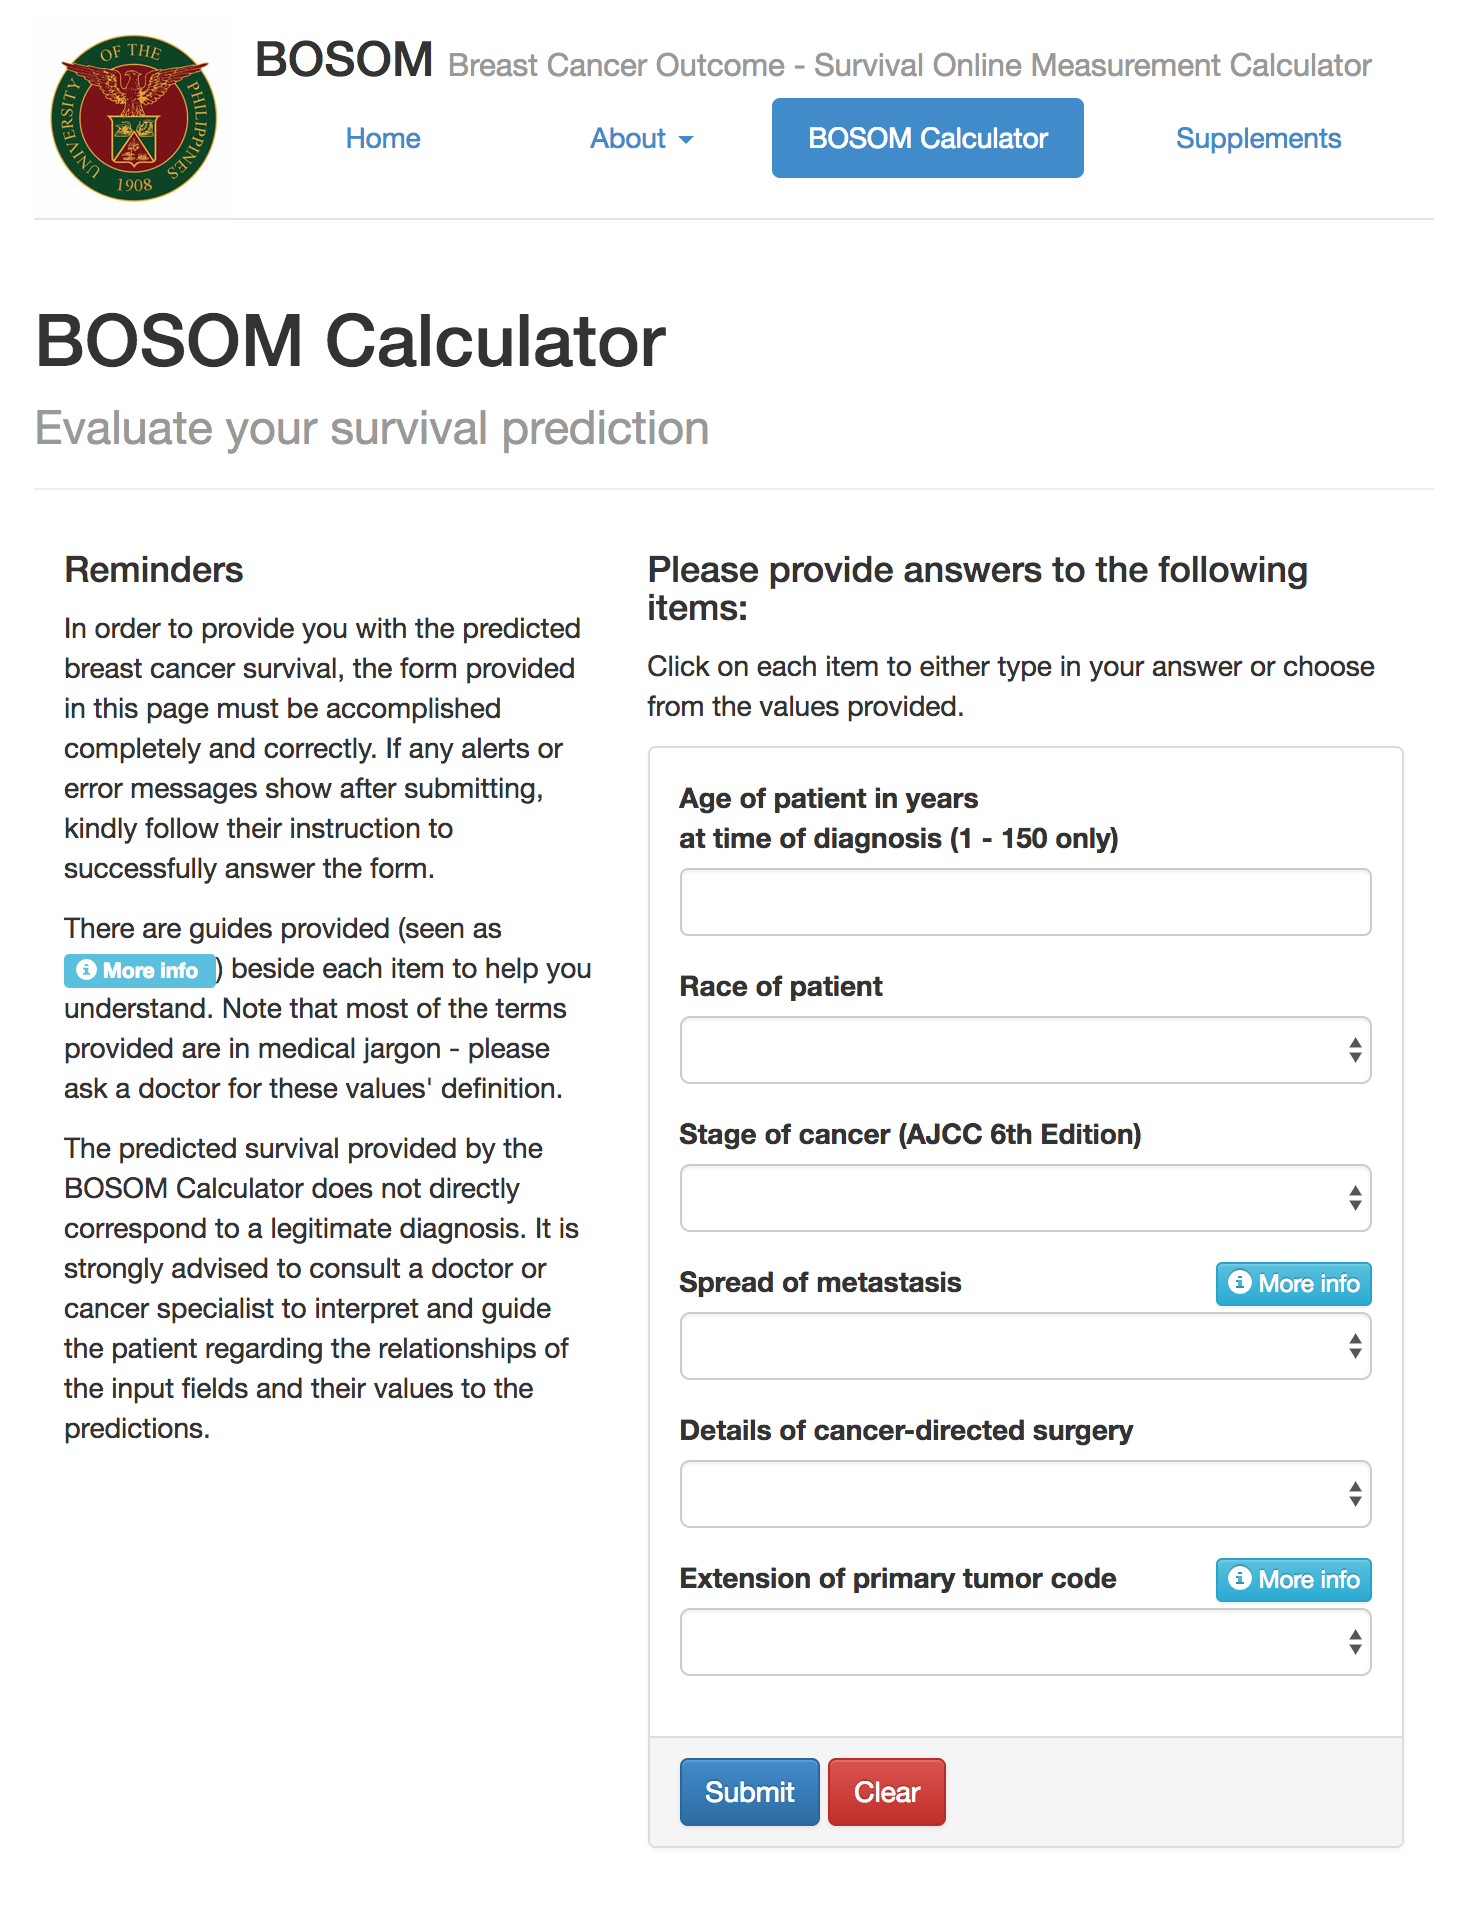 BOSOM - "BOSOM Calculator" page